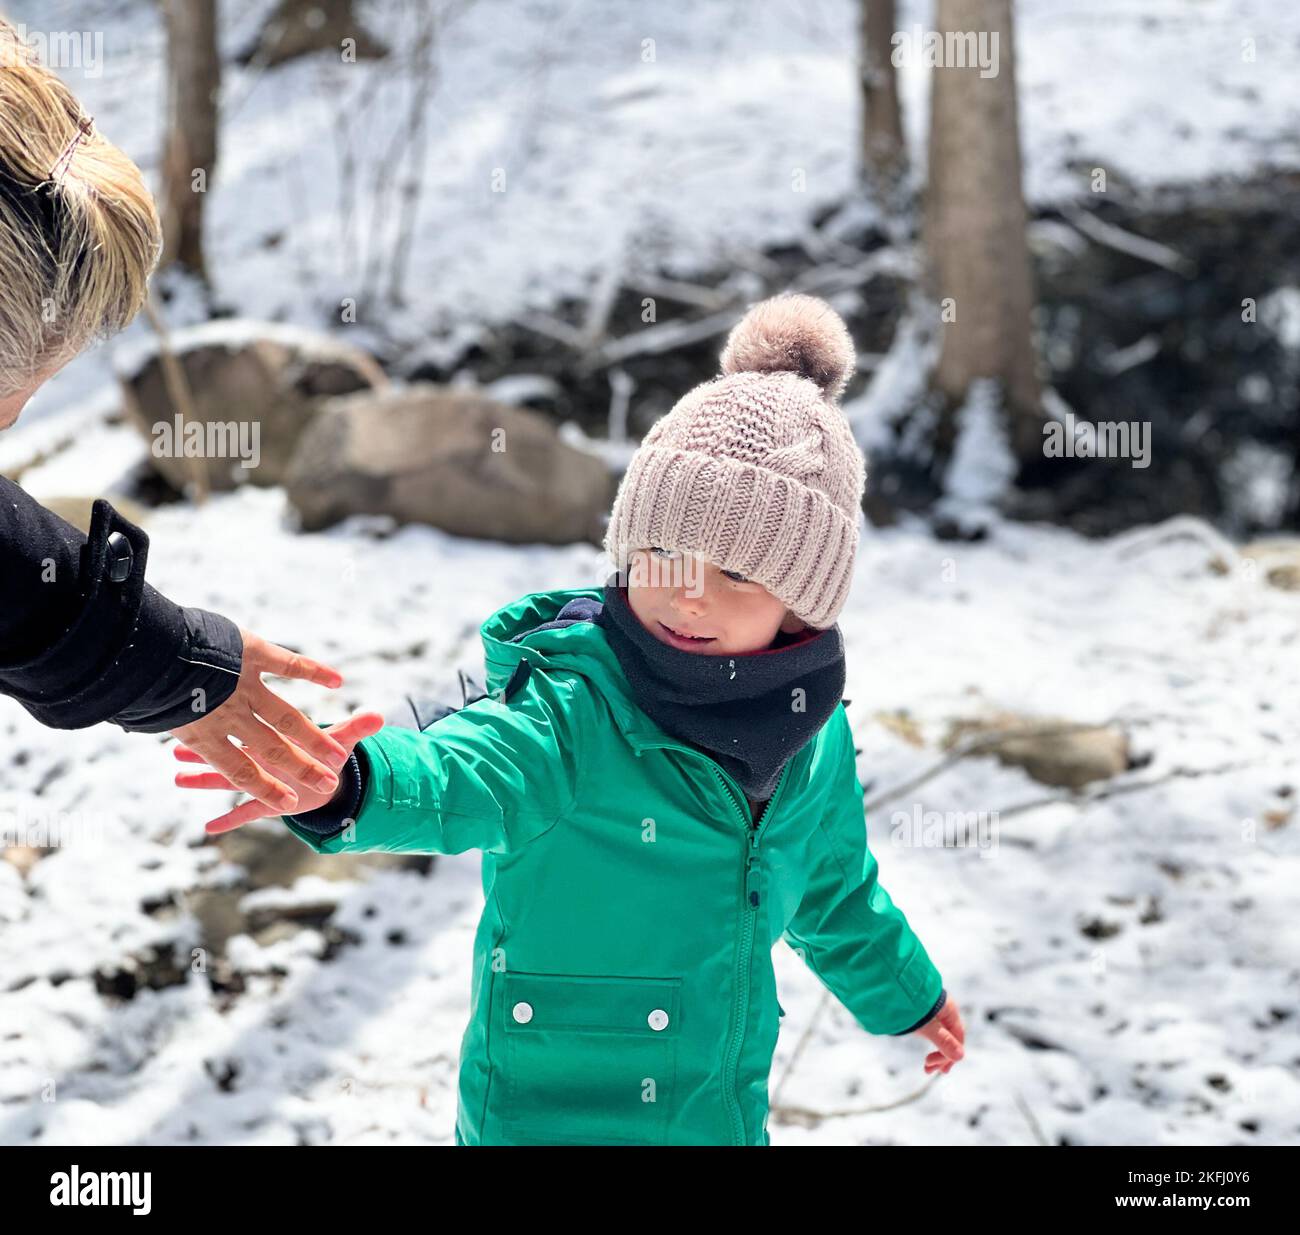 Junge in warmer Kleidung, die die Hand der Mutter hält, während er während des Urlaubs auf schneebedecktem Land im Wald steht Stockfoto